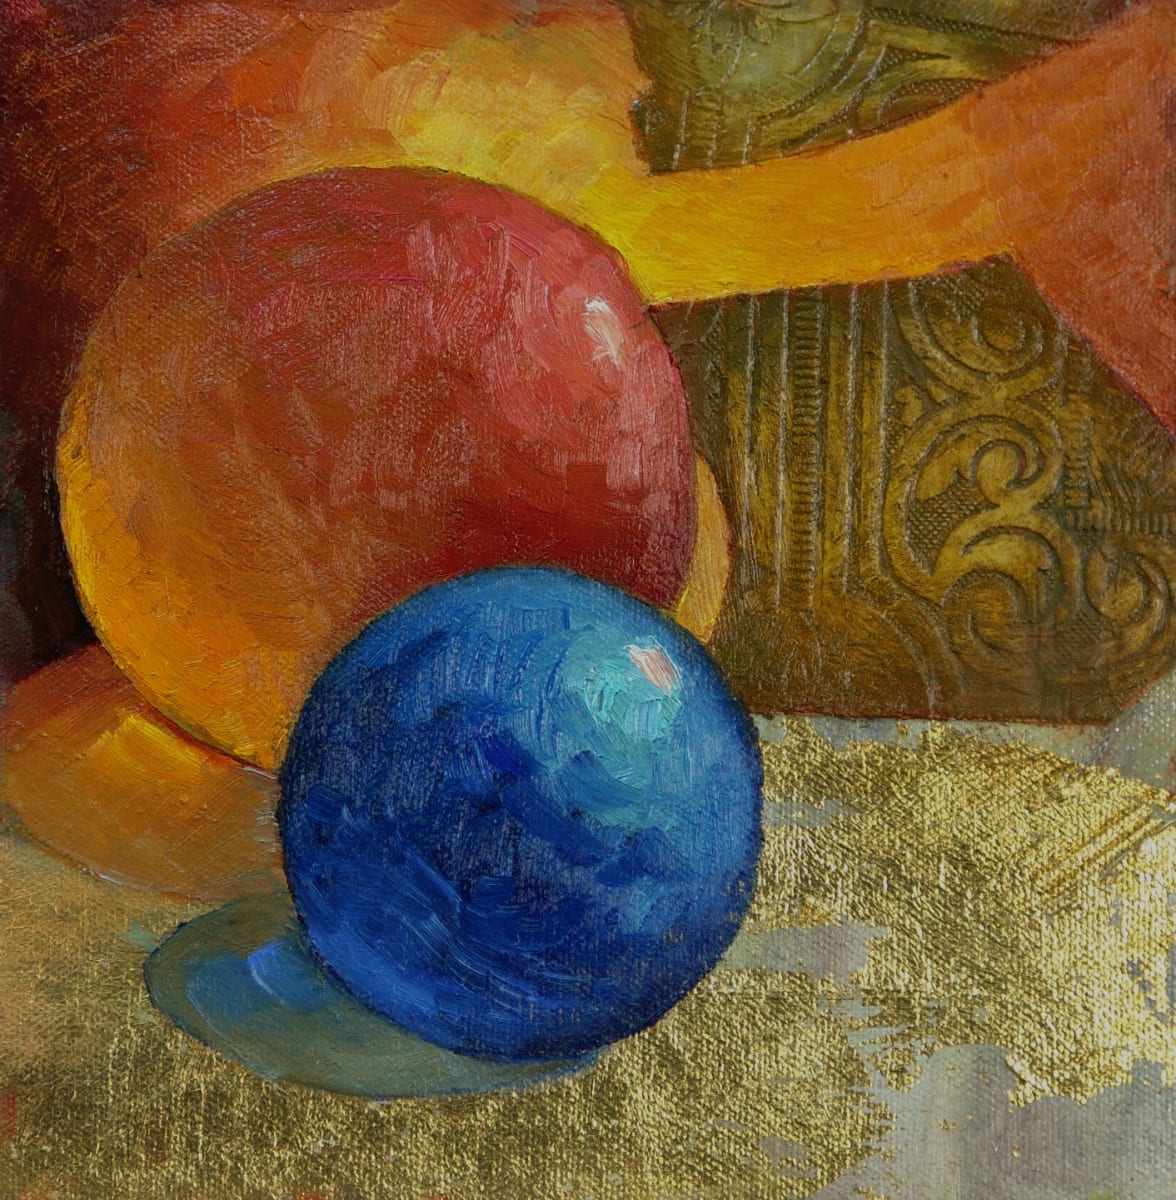 Orange and Blue Globes on Goldleaf by Barbara Schilling  Image: unframed